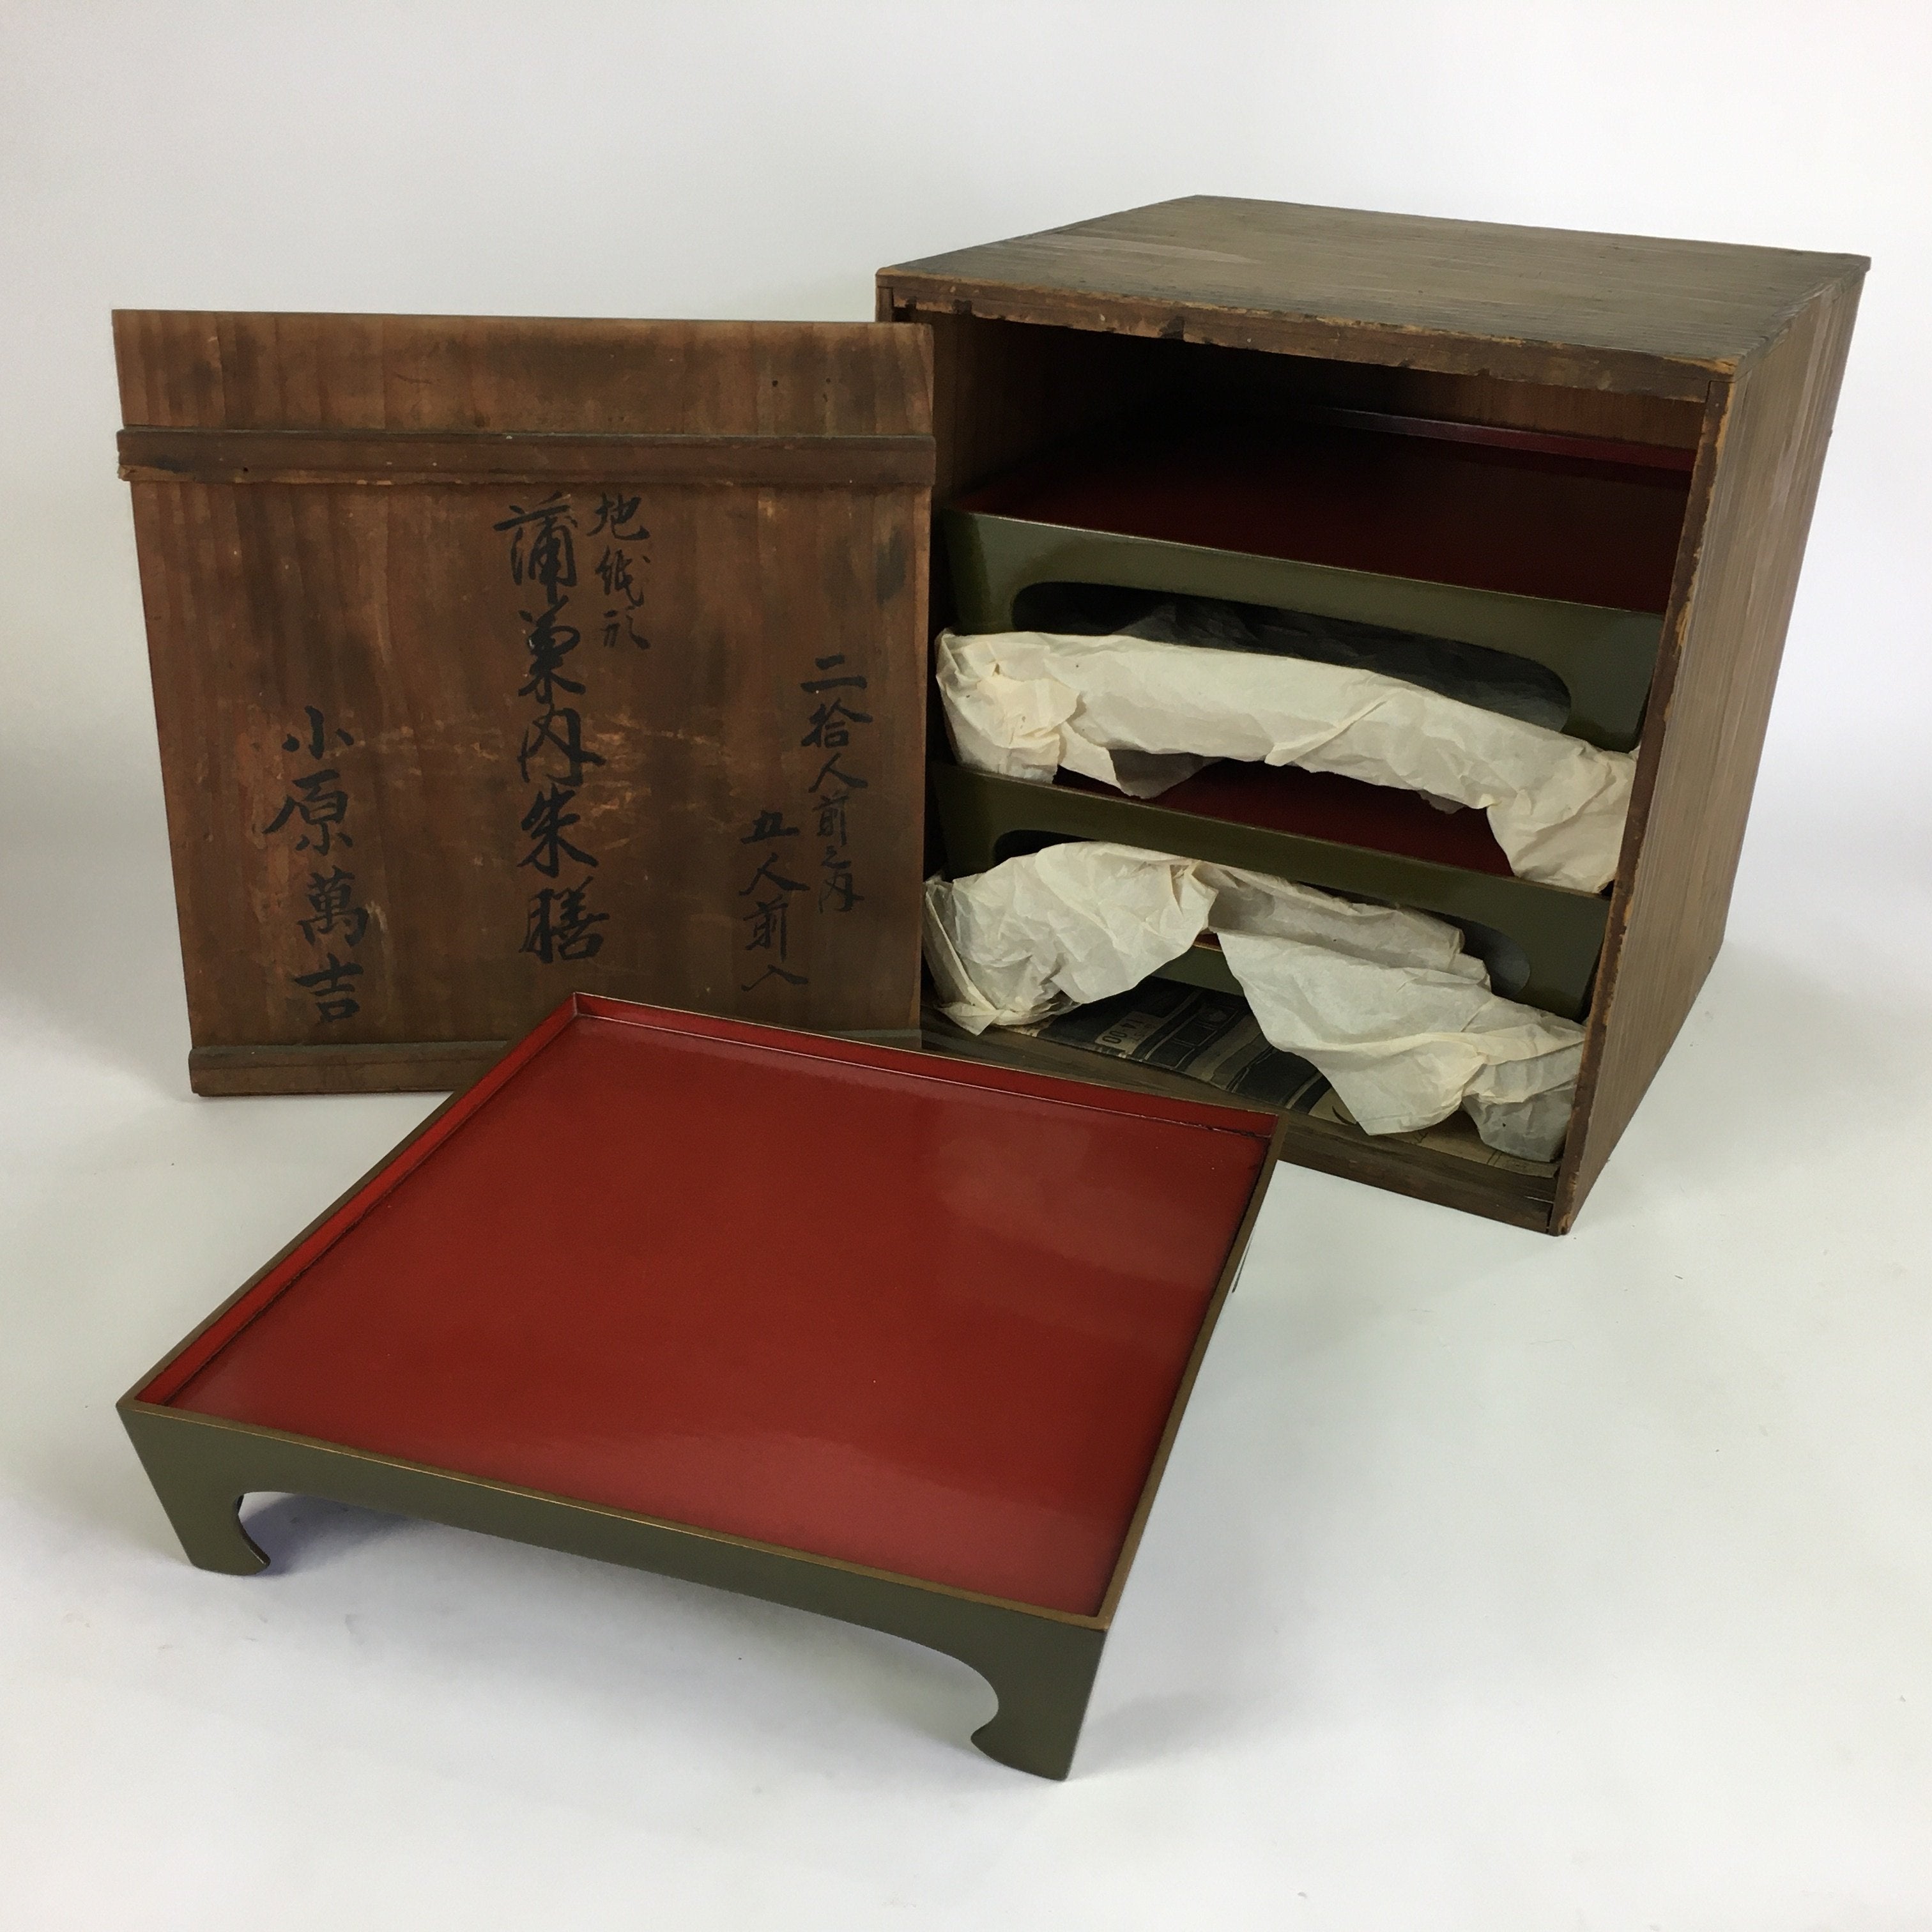 Antique Japanese Wooden Lacquer Tray 5pc Set Vtg Ozen tray Nurimono LWB43